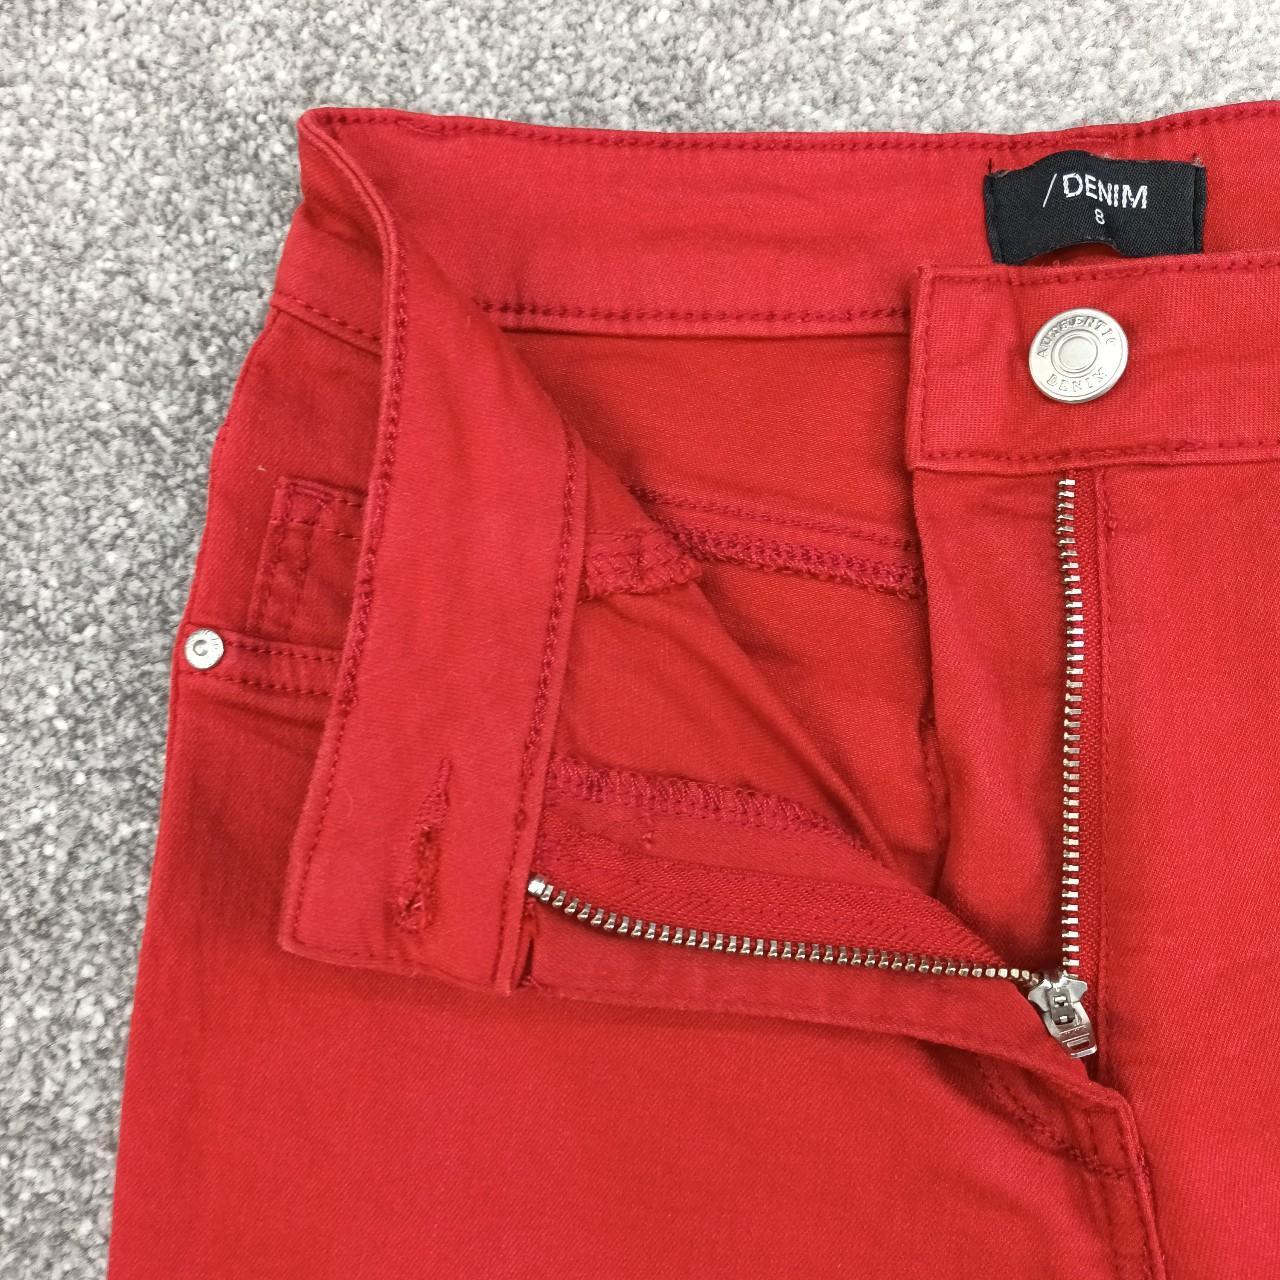 Matalan Women's Red Jeans | Depop